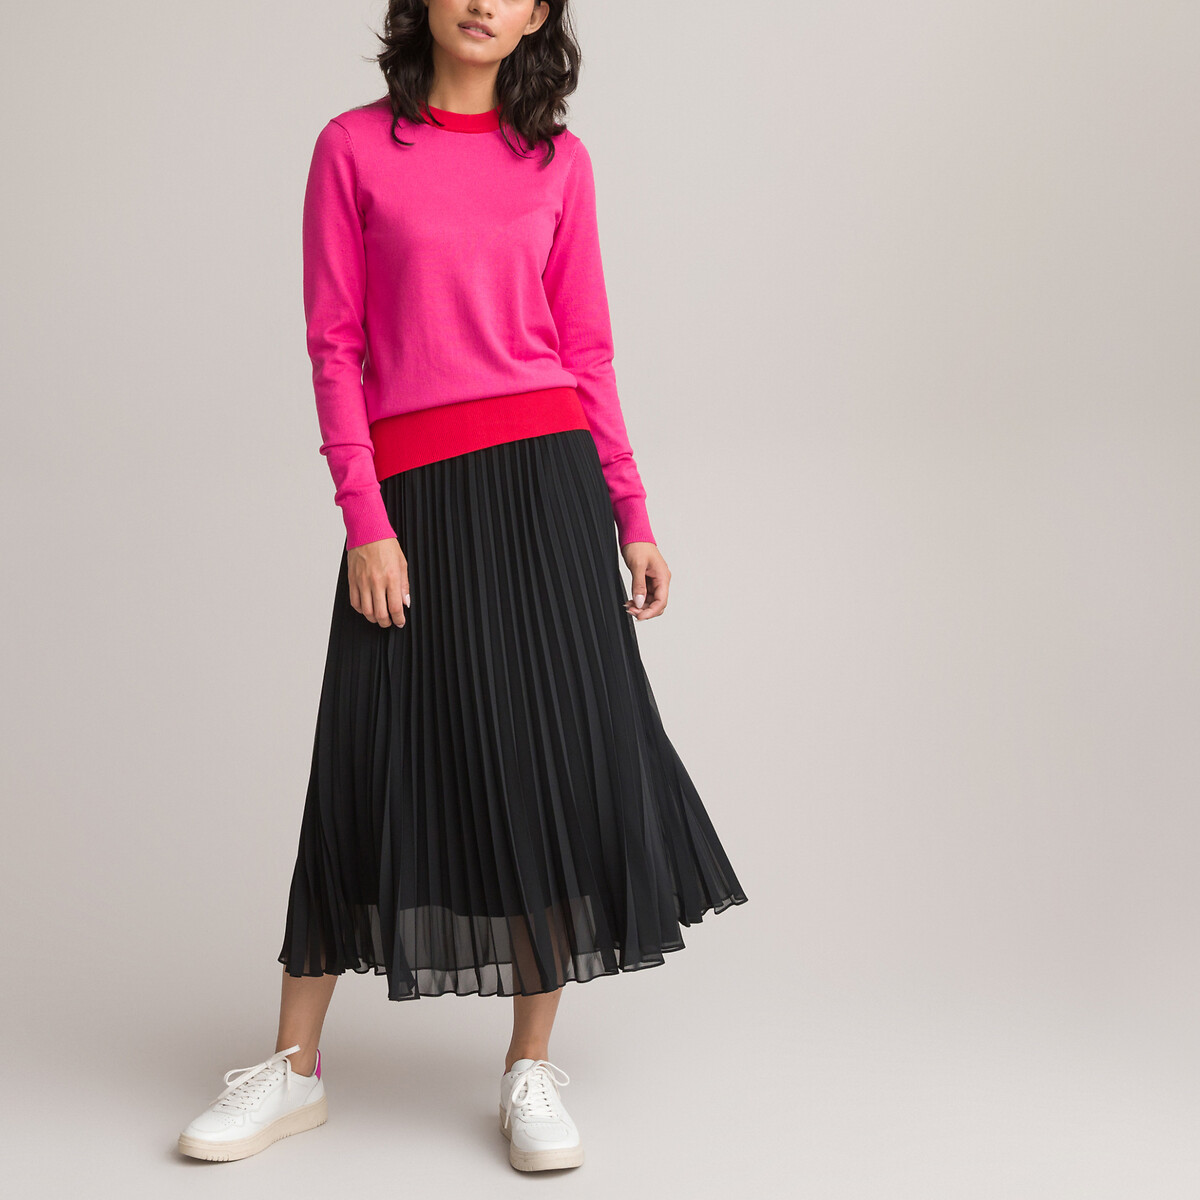 Пуловер LA REDOUTE COLLECTIONS Пуловер Двухцветный с круглым вырезом из тонкого трикотажа S розовый, размер S - фото 2